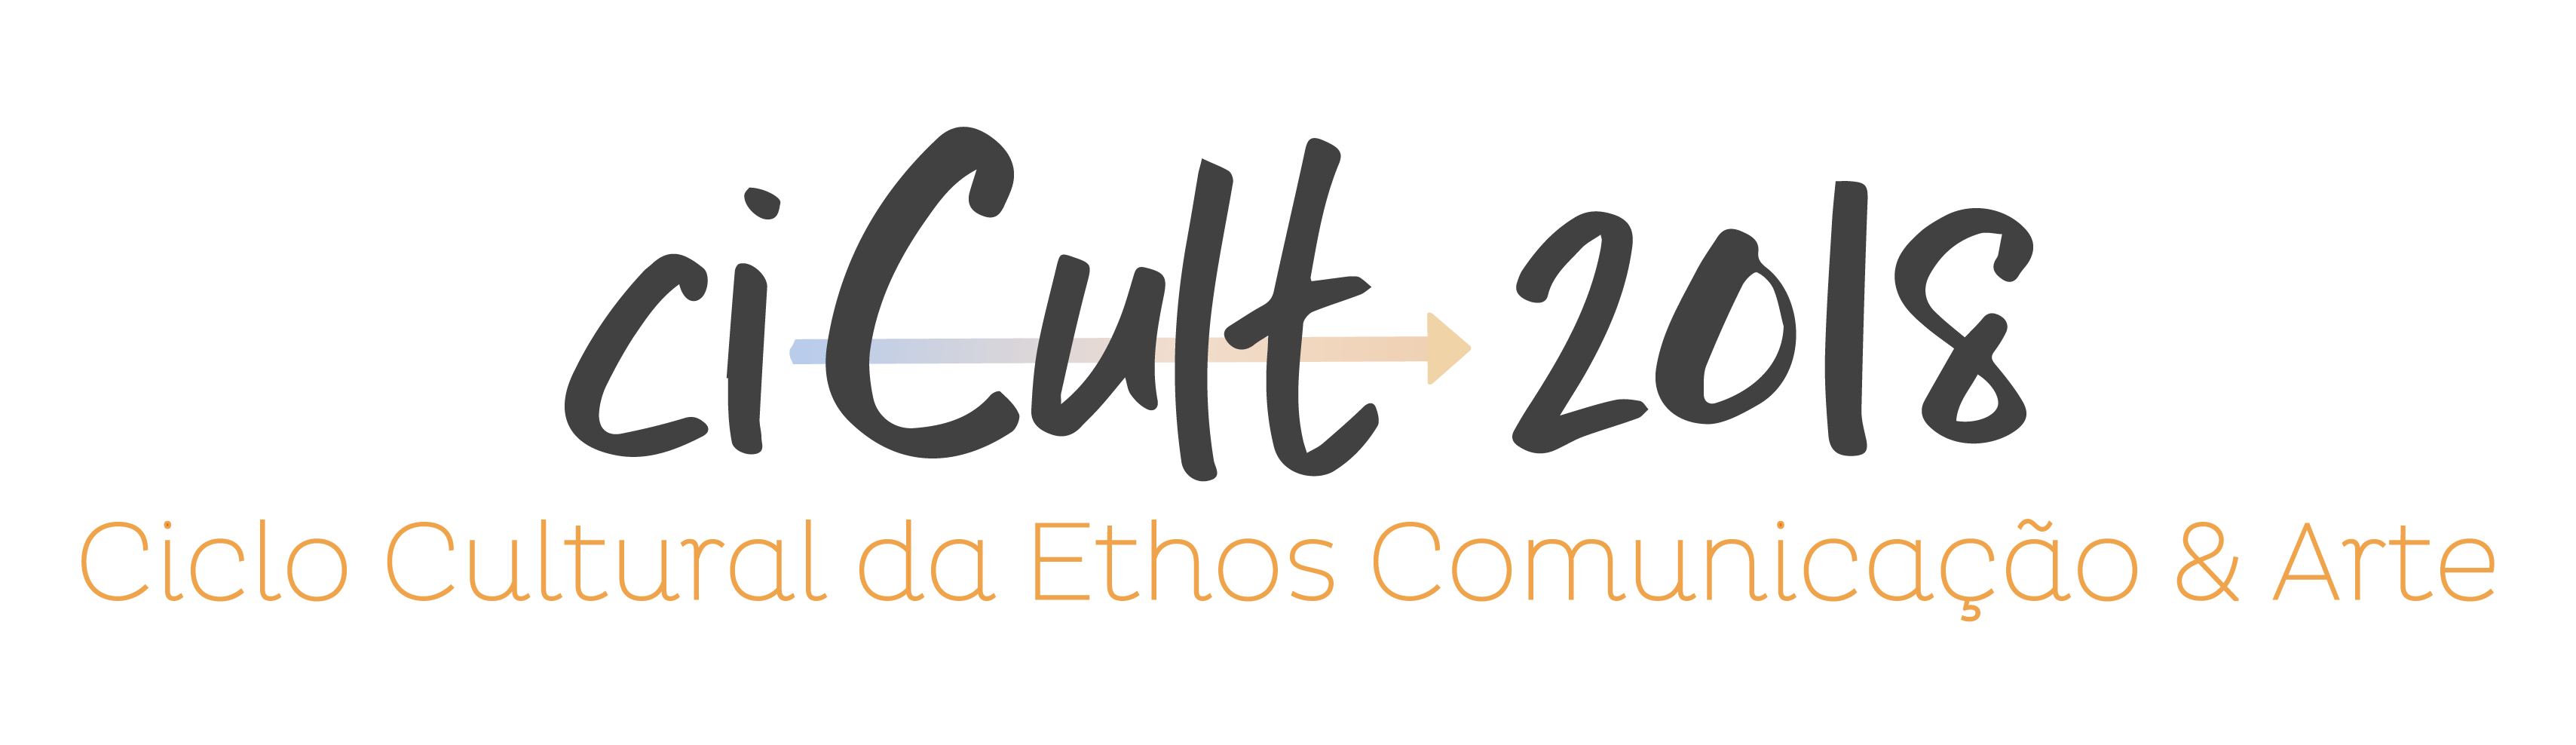 CICULT 2018 . CICLO CULTURAL DA ETHOS COMUNICAÇÃO & ARTE